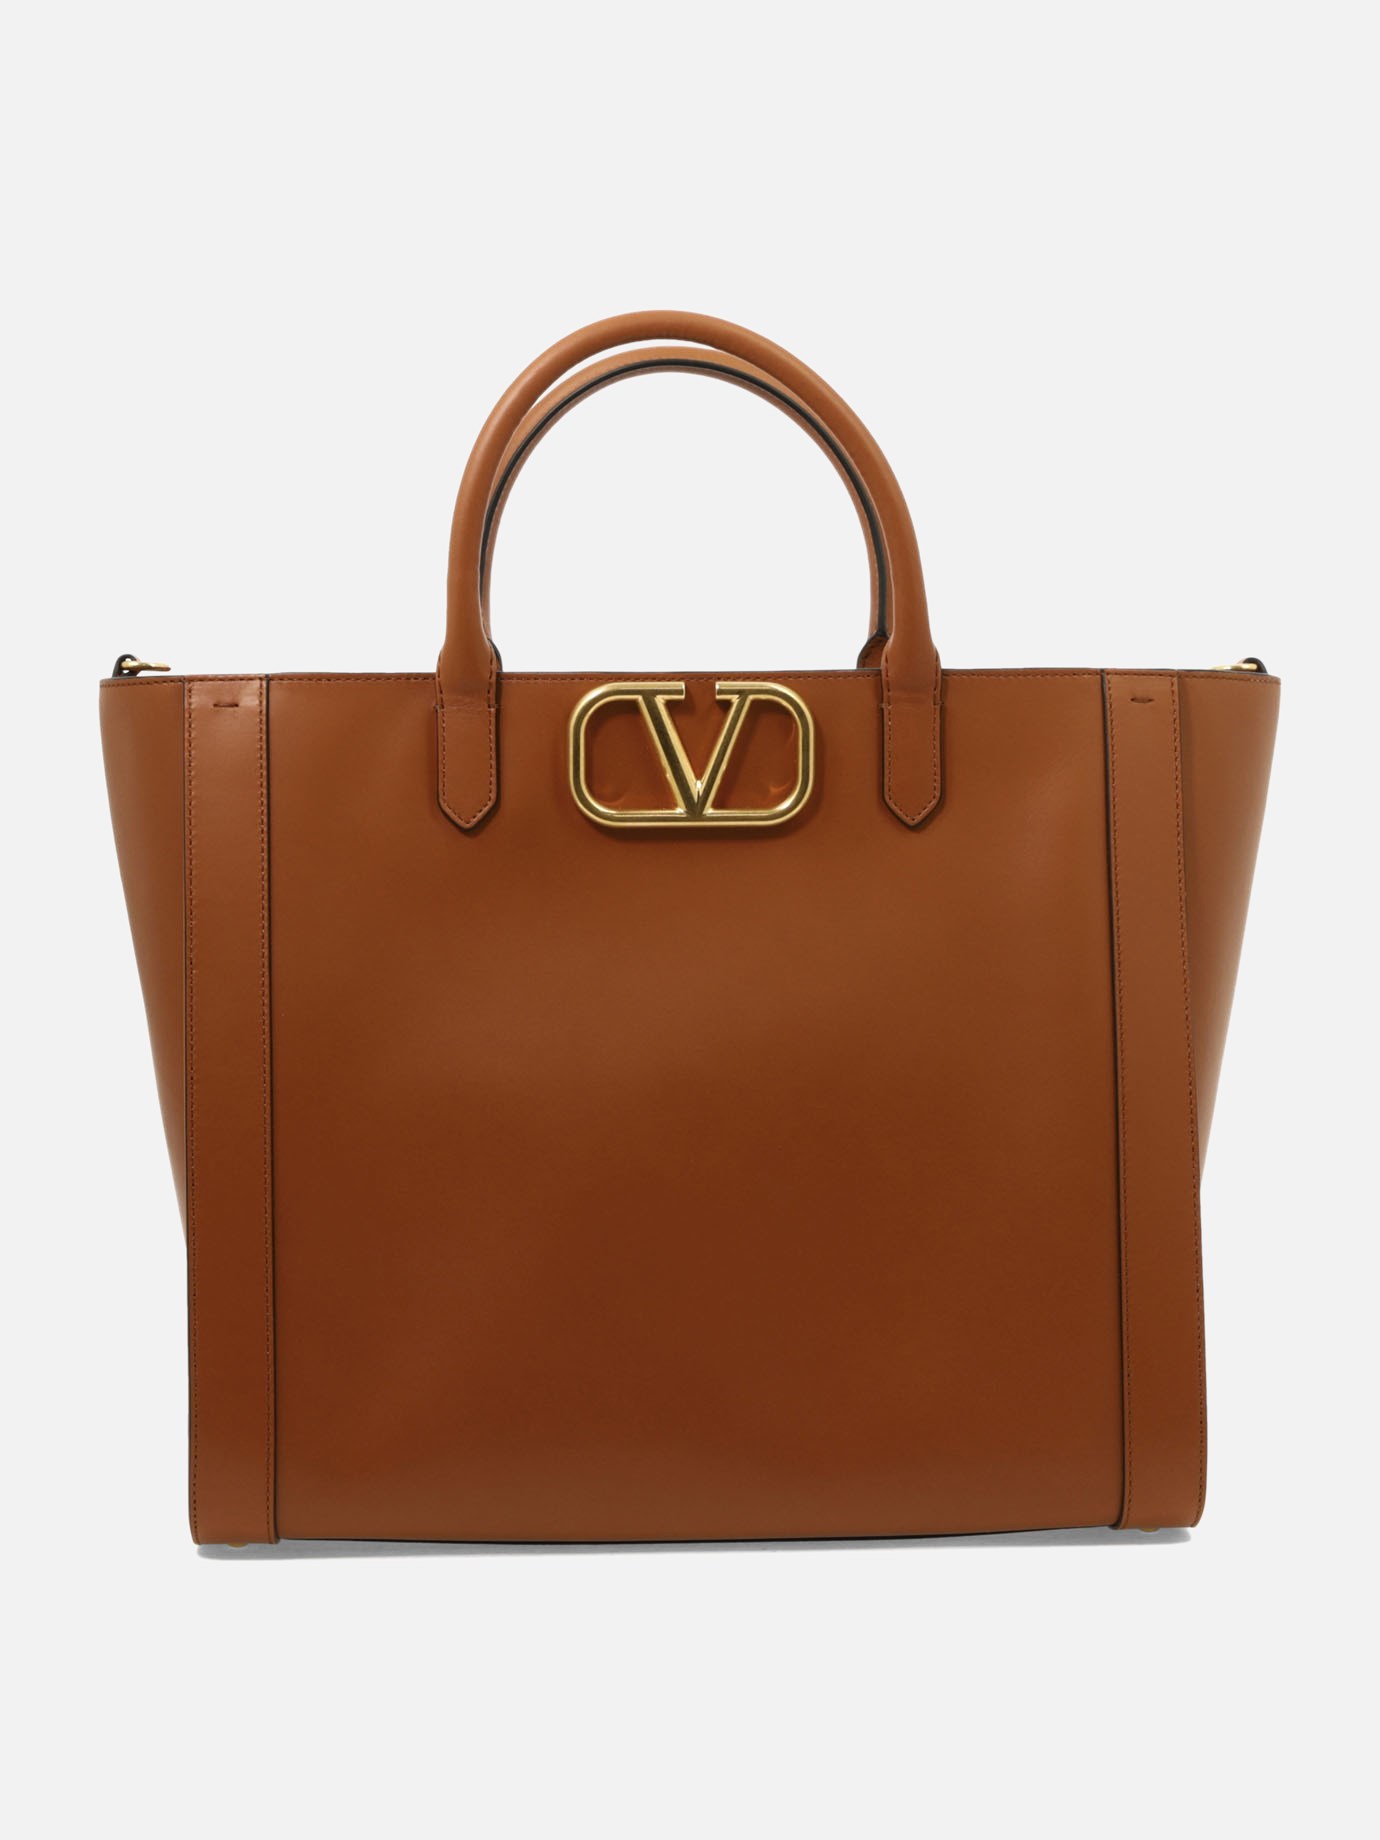  VLogo  handbagby Valentino Garavani - 3